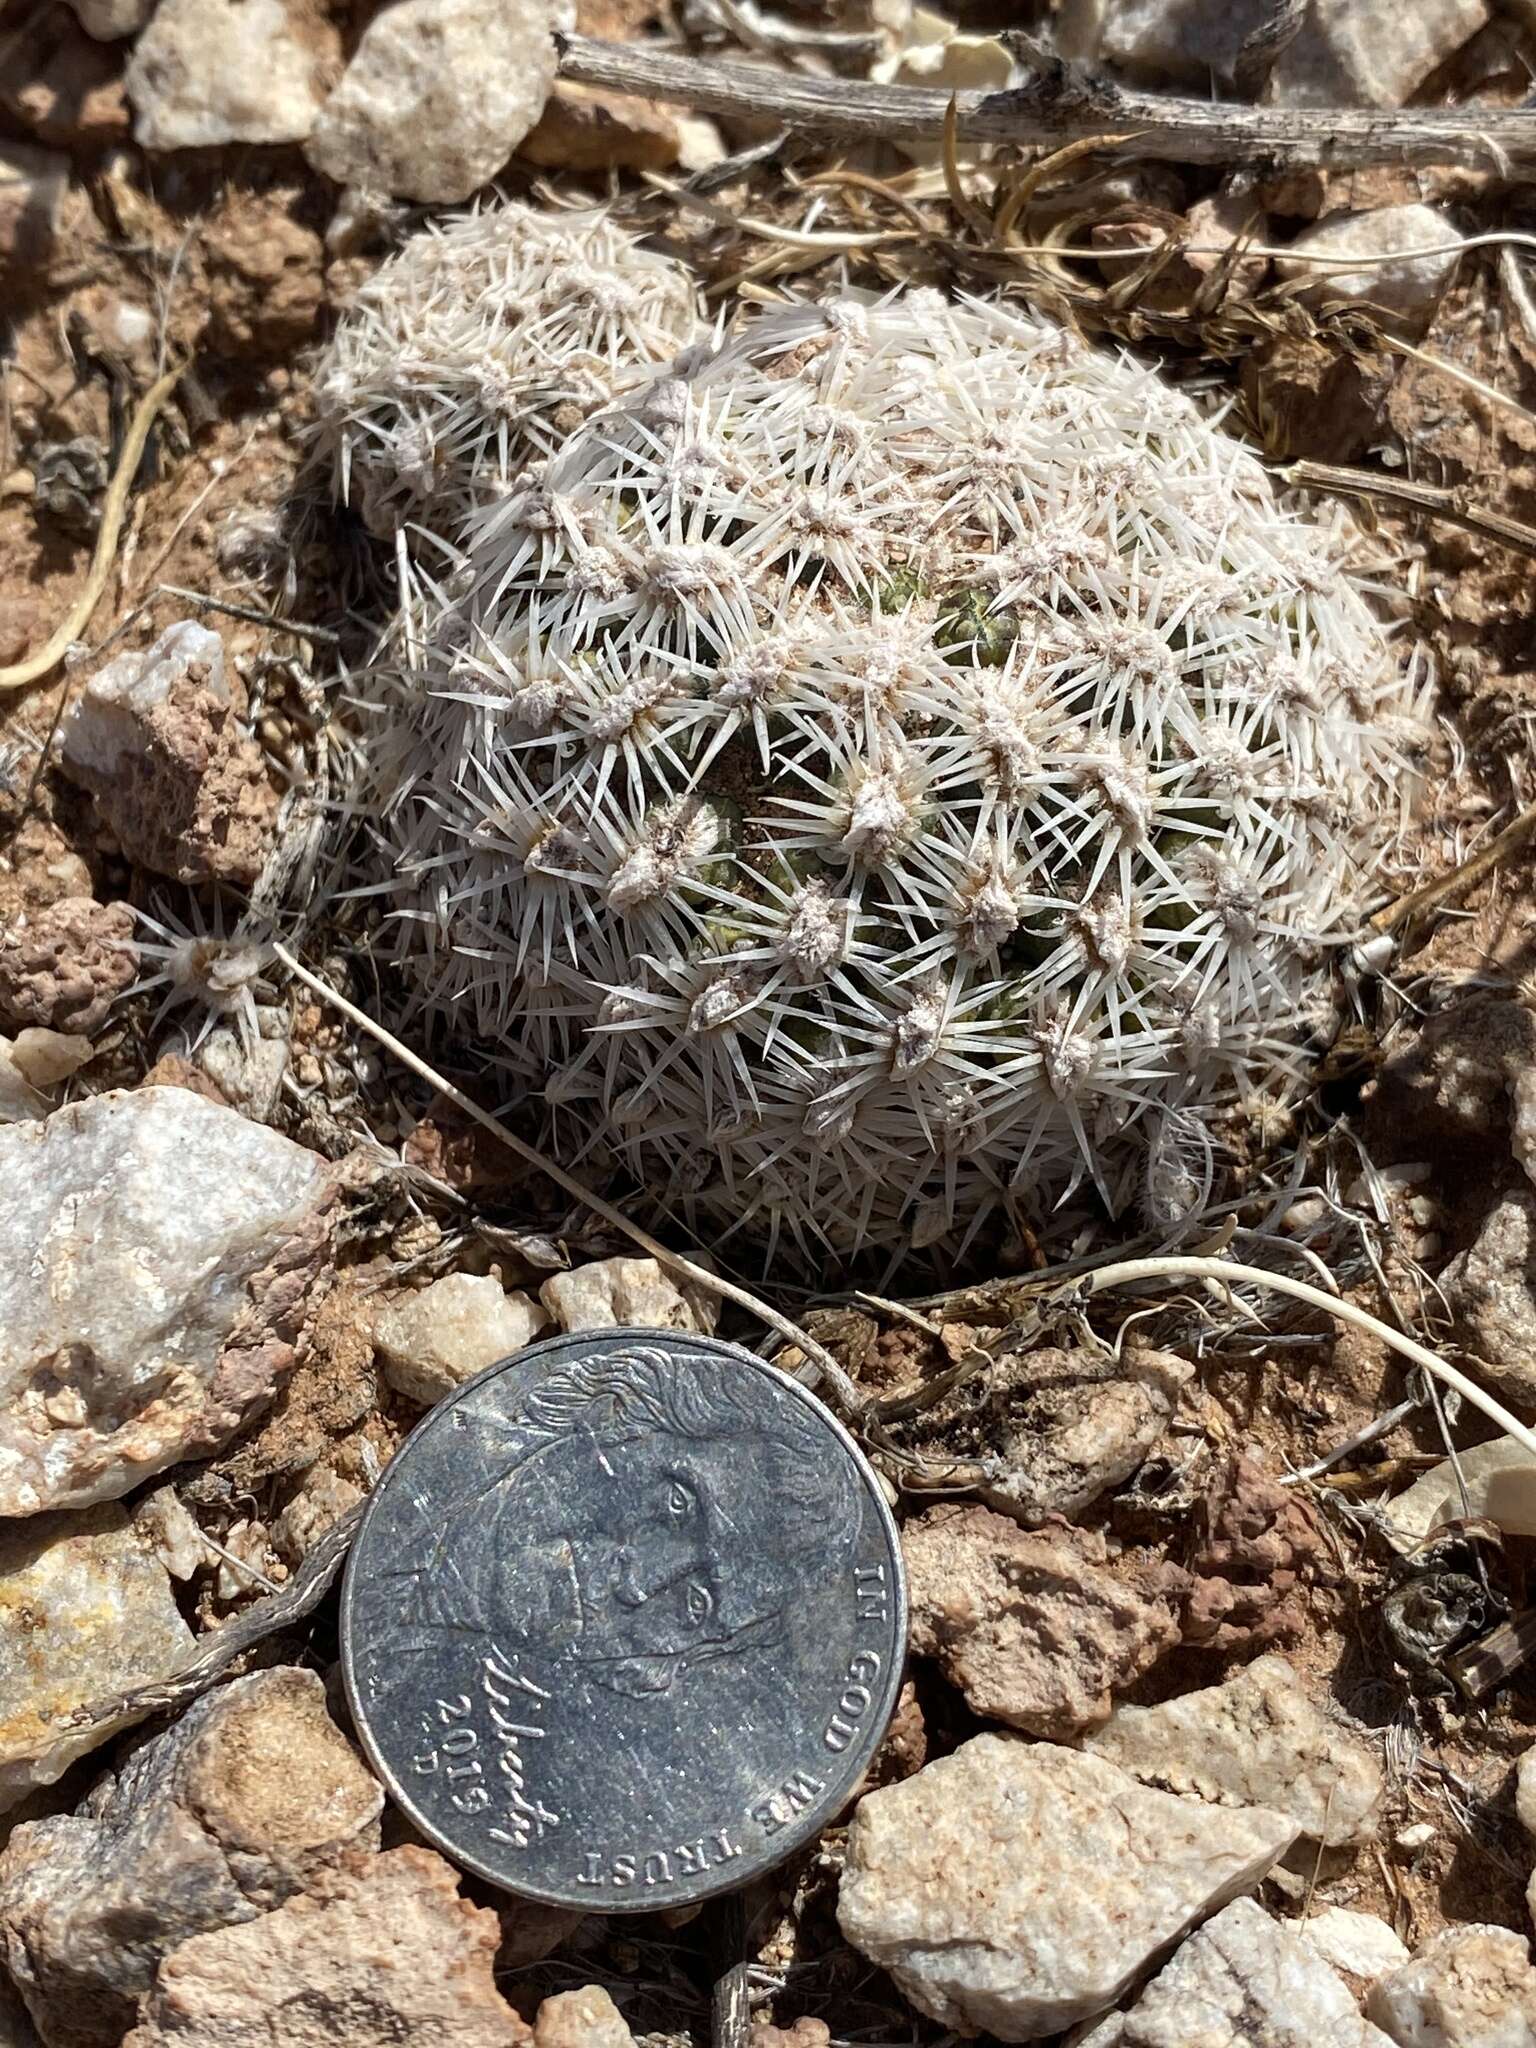 Image of Brady's Hedgehog Cactus